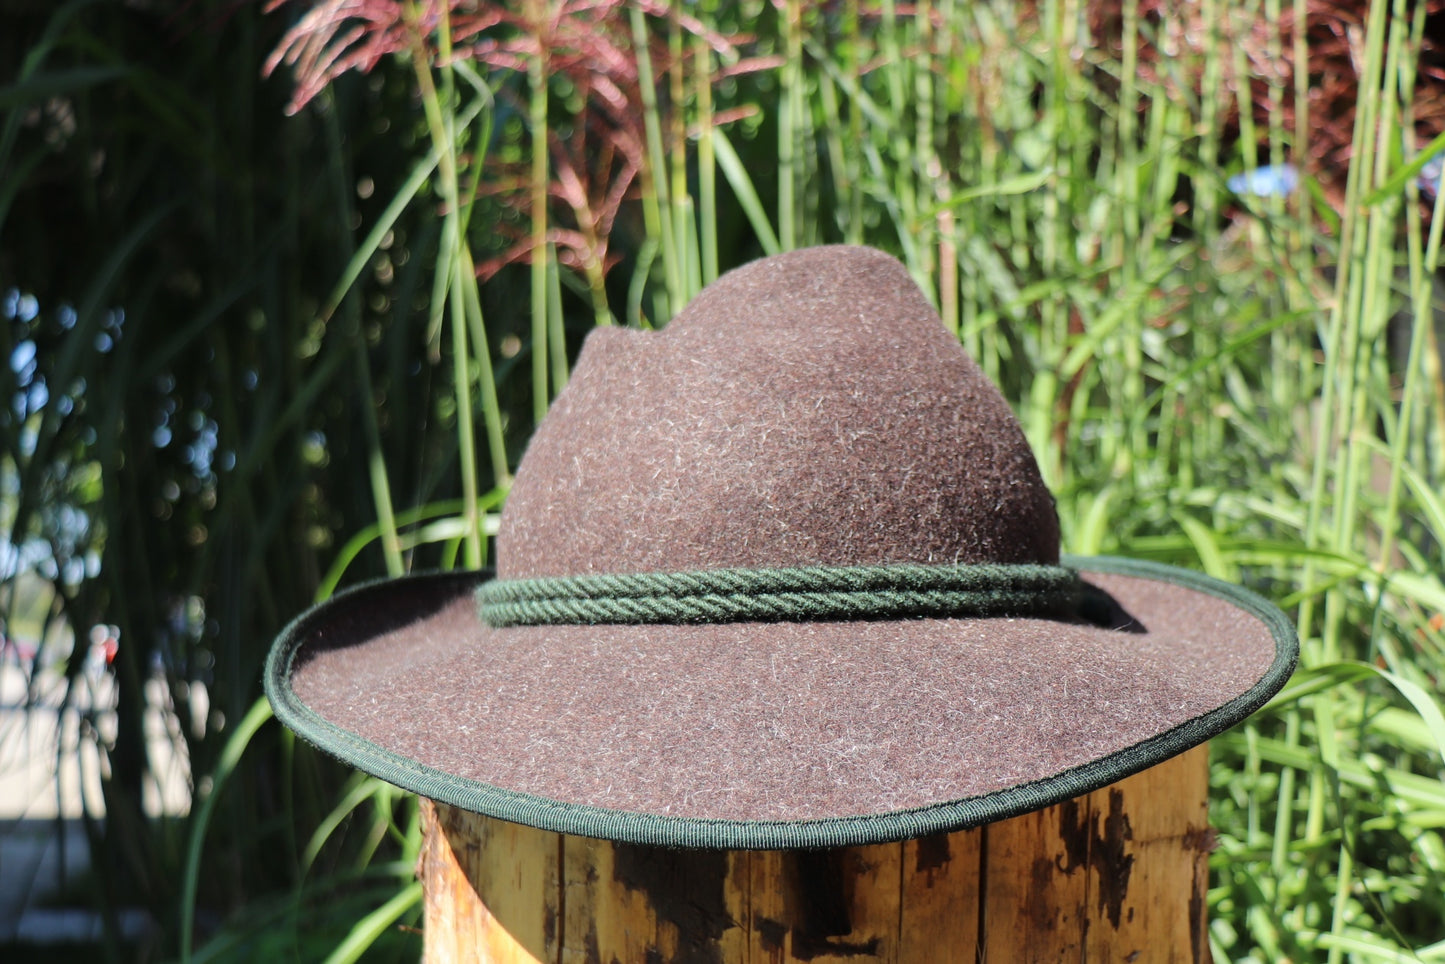 Traditional hat Werdenfelser mottled brown